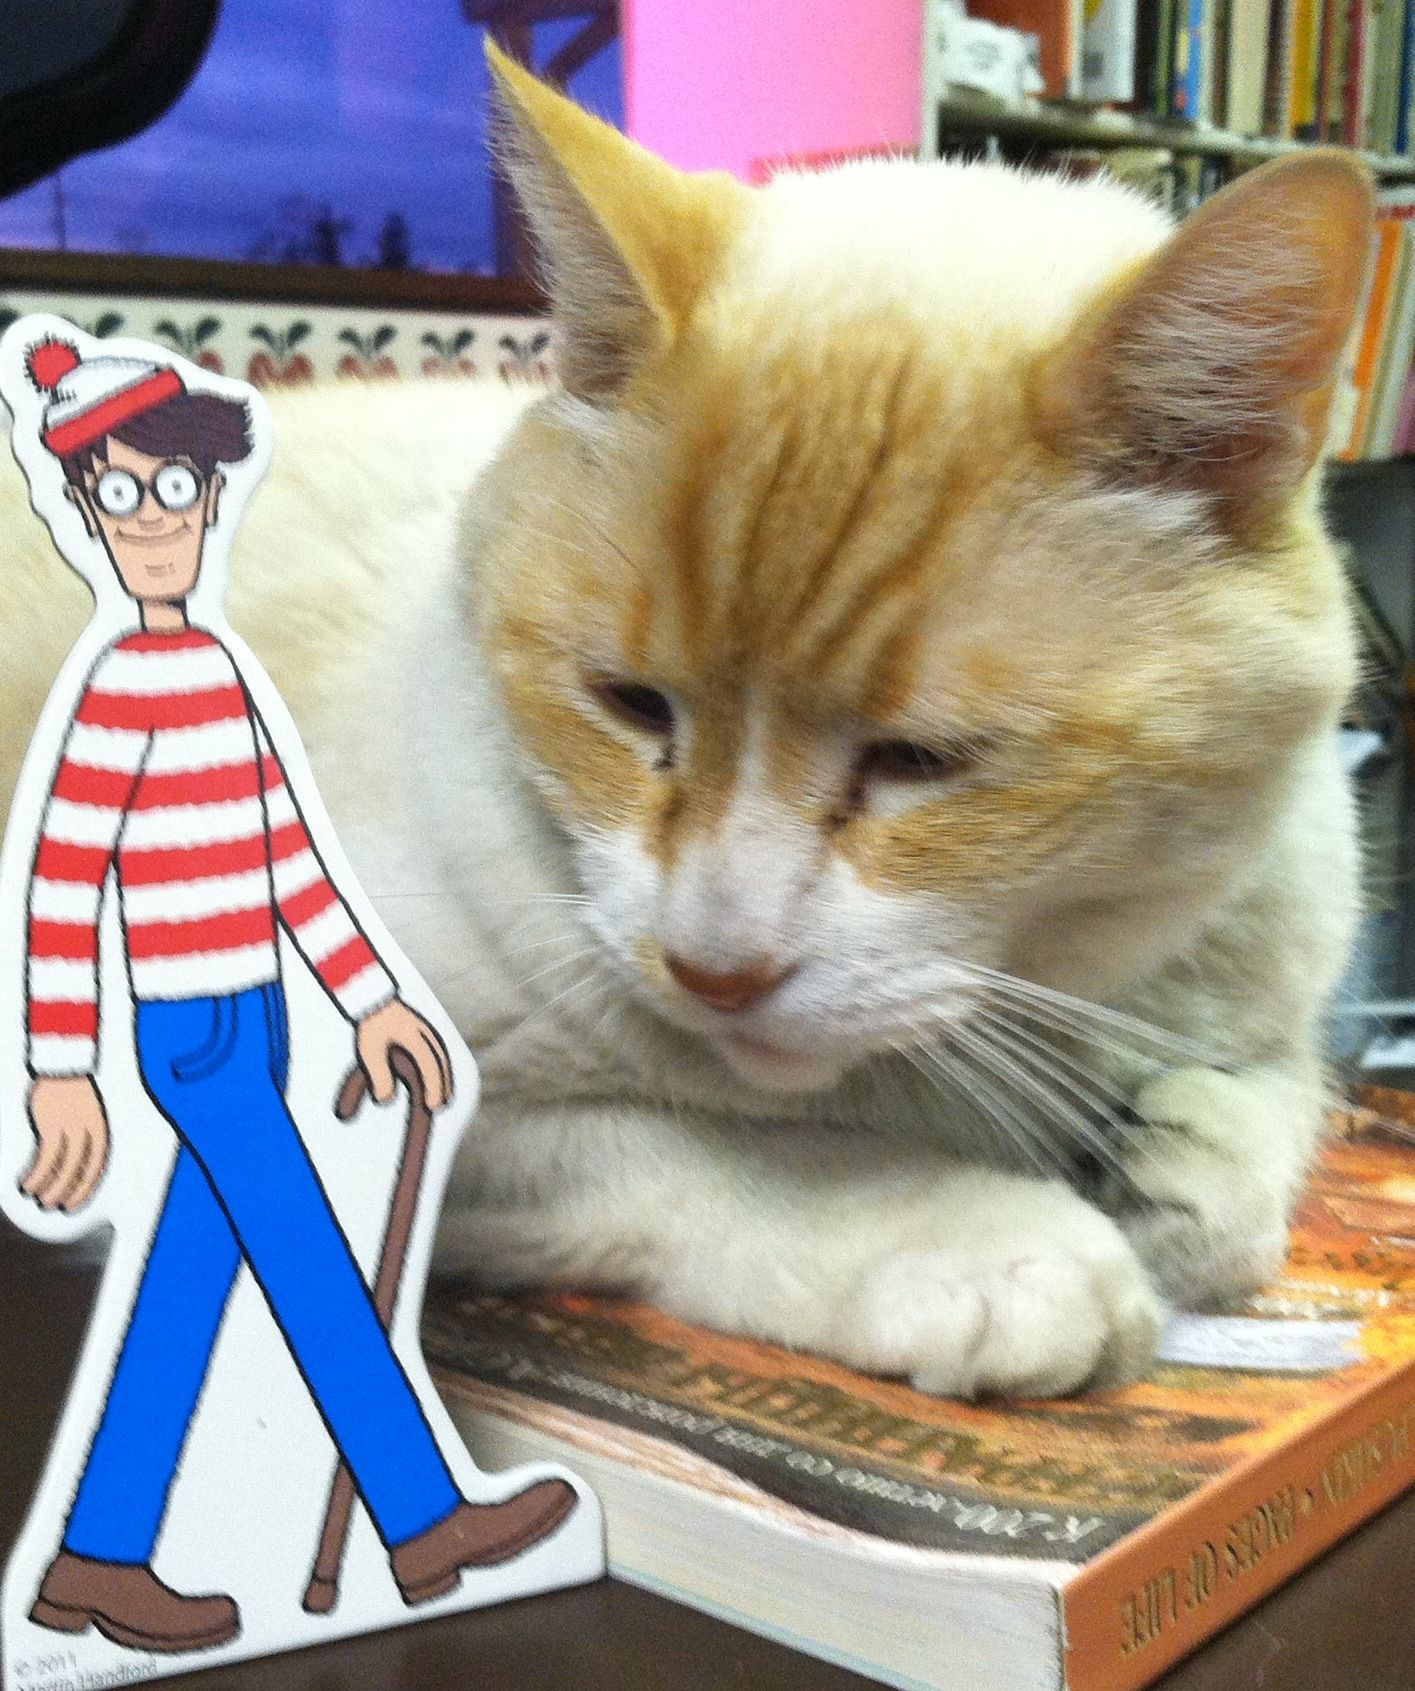 Look, I found Waldo!